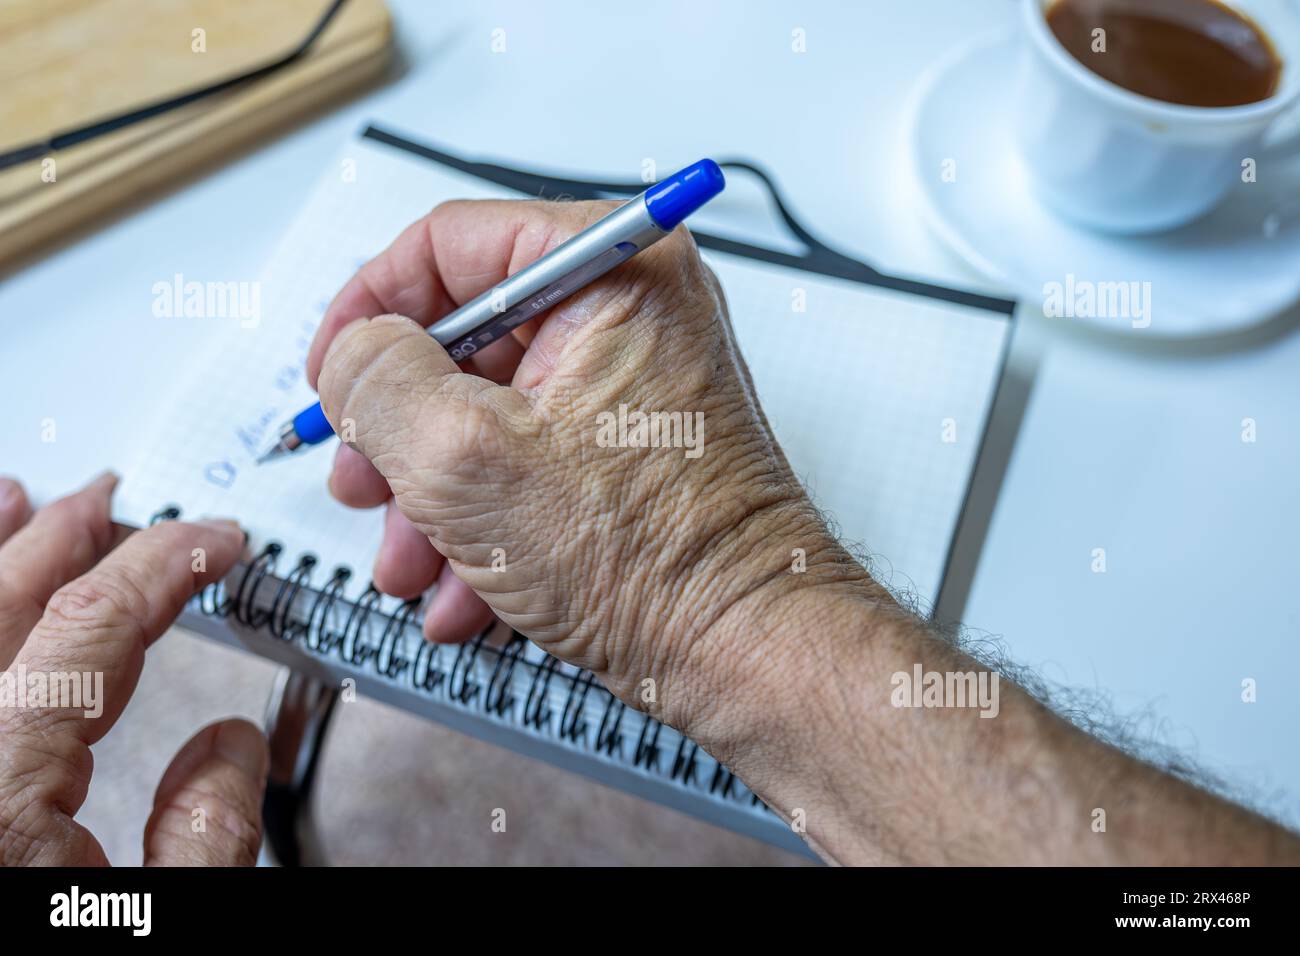 Il vecchio scrive appunti mentre beve caffè in salotto Foto Stock